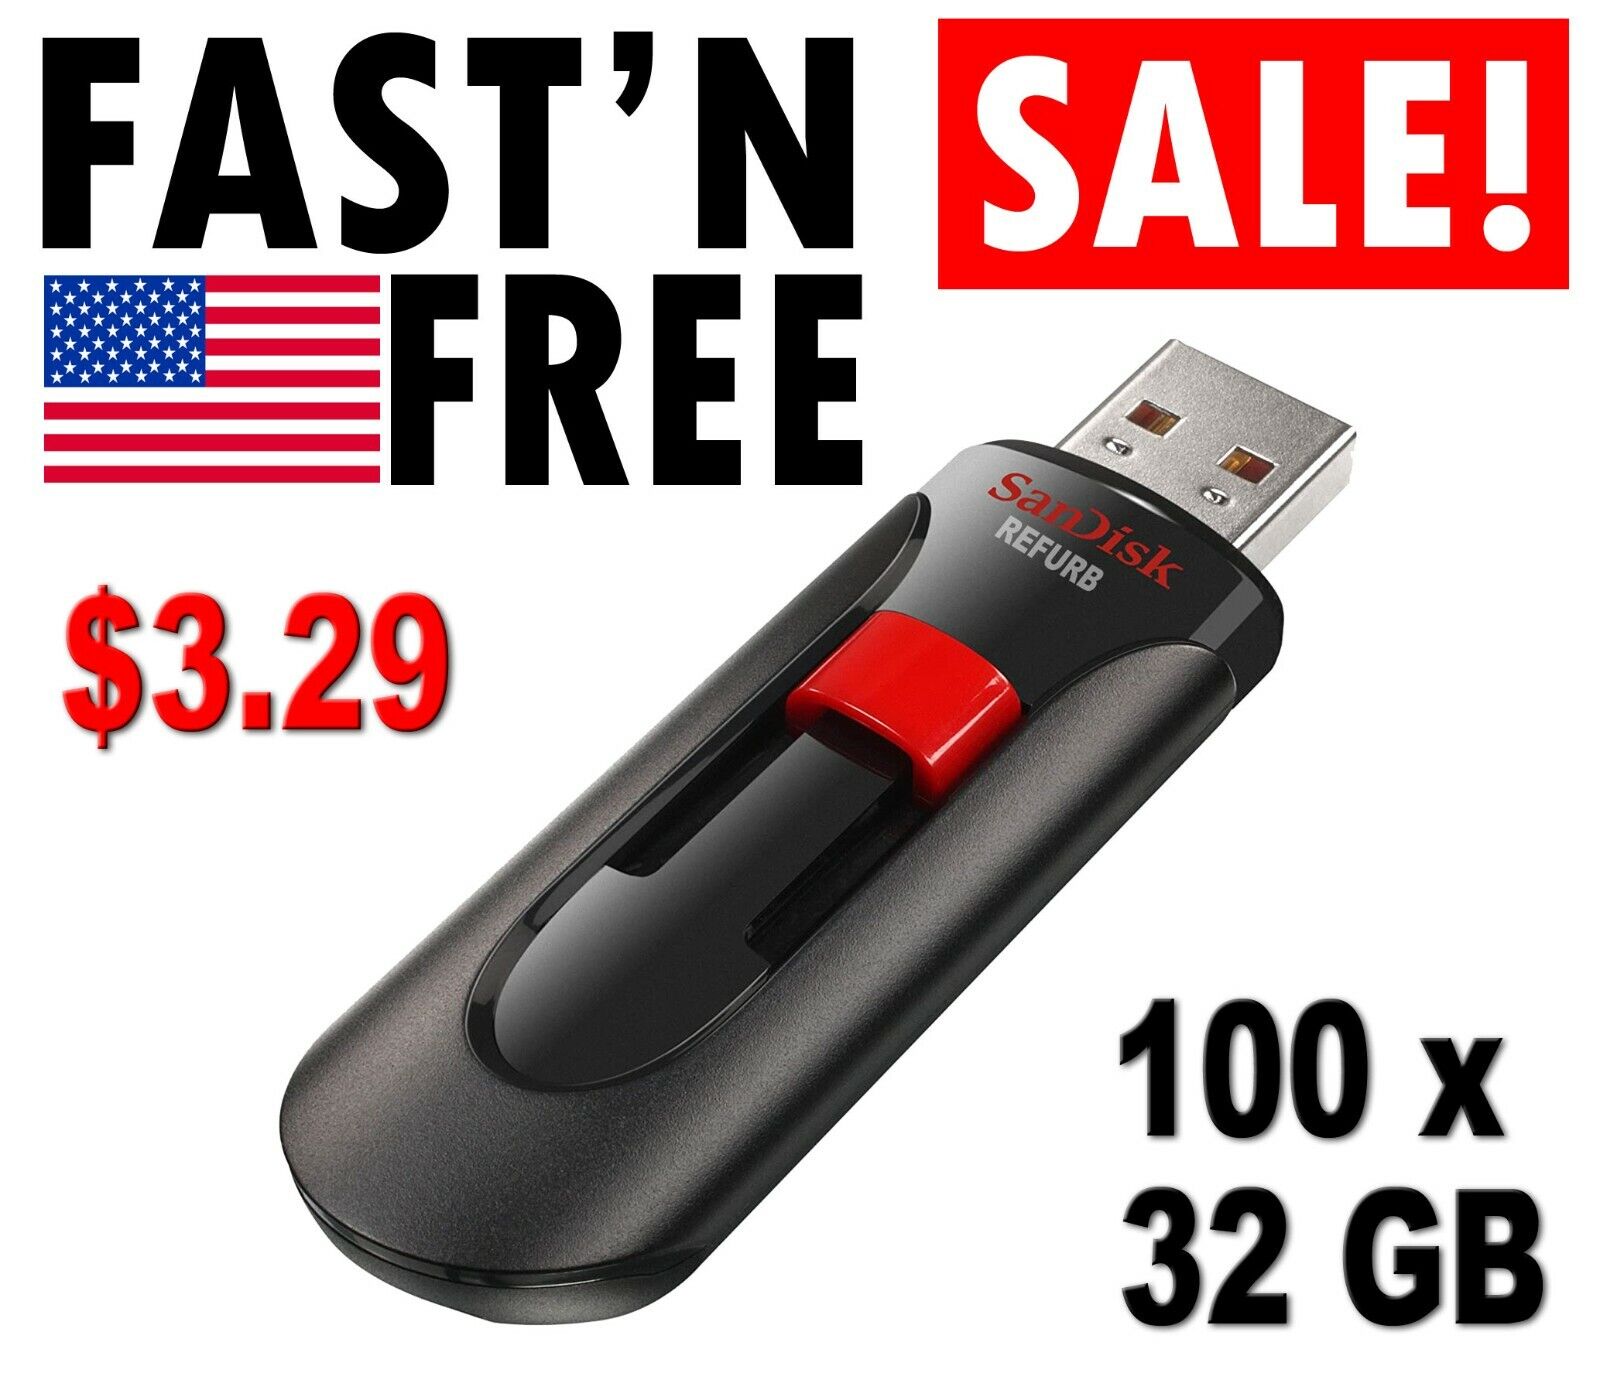 Lot 100x SanDisk Cruzer Glide 32GB USB flash thumb drive SDCZ60-032G 100 x 32 GB